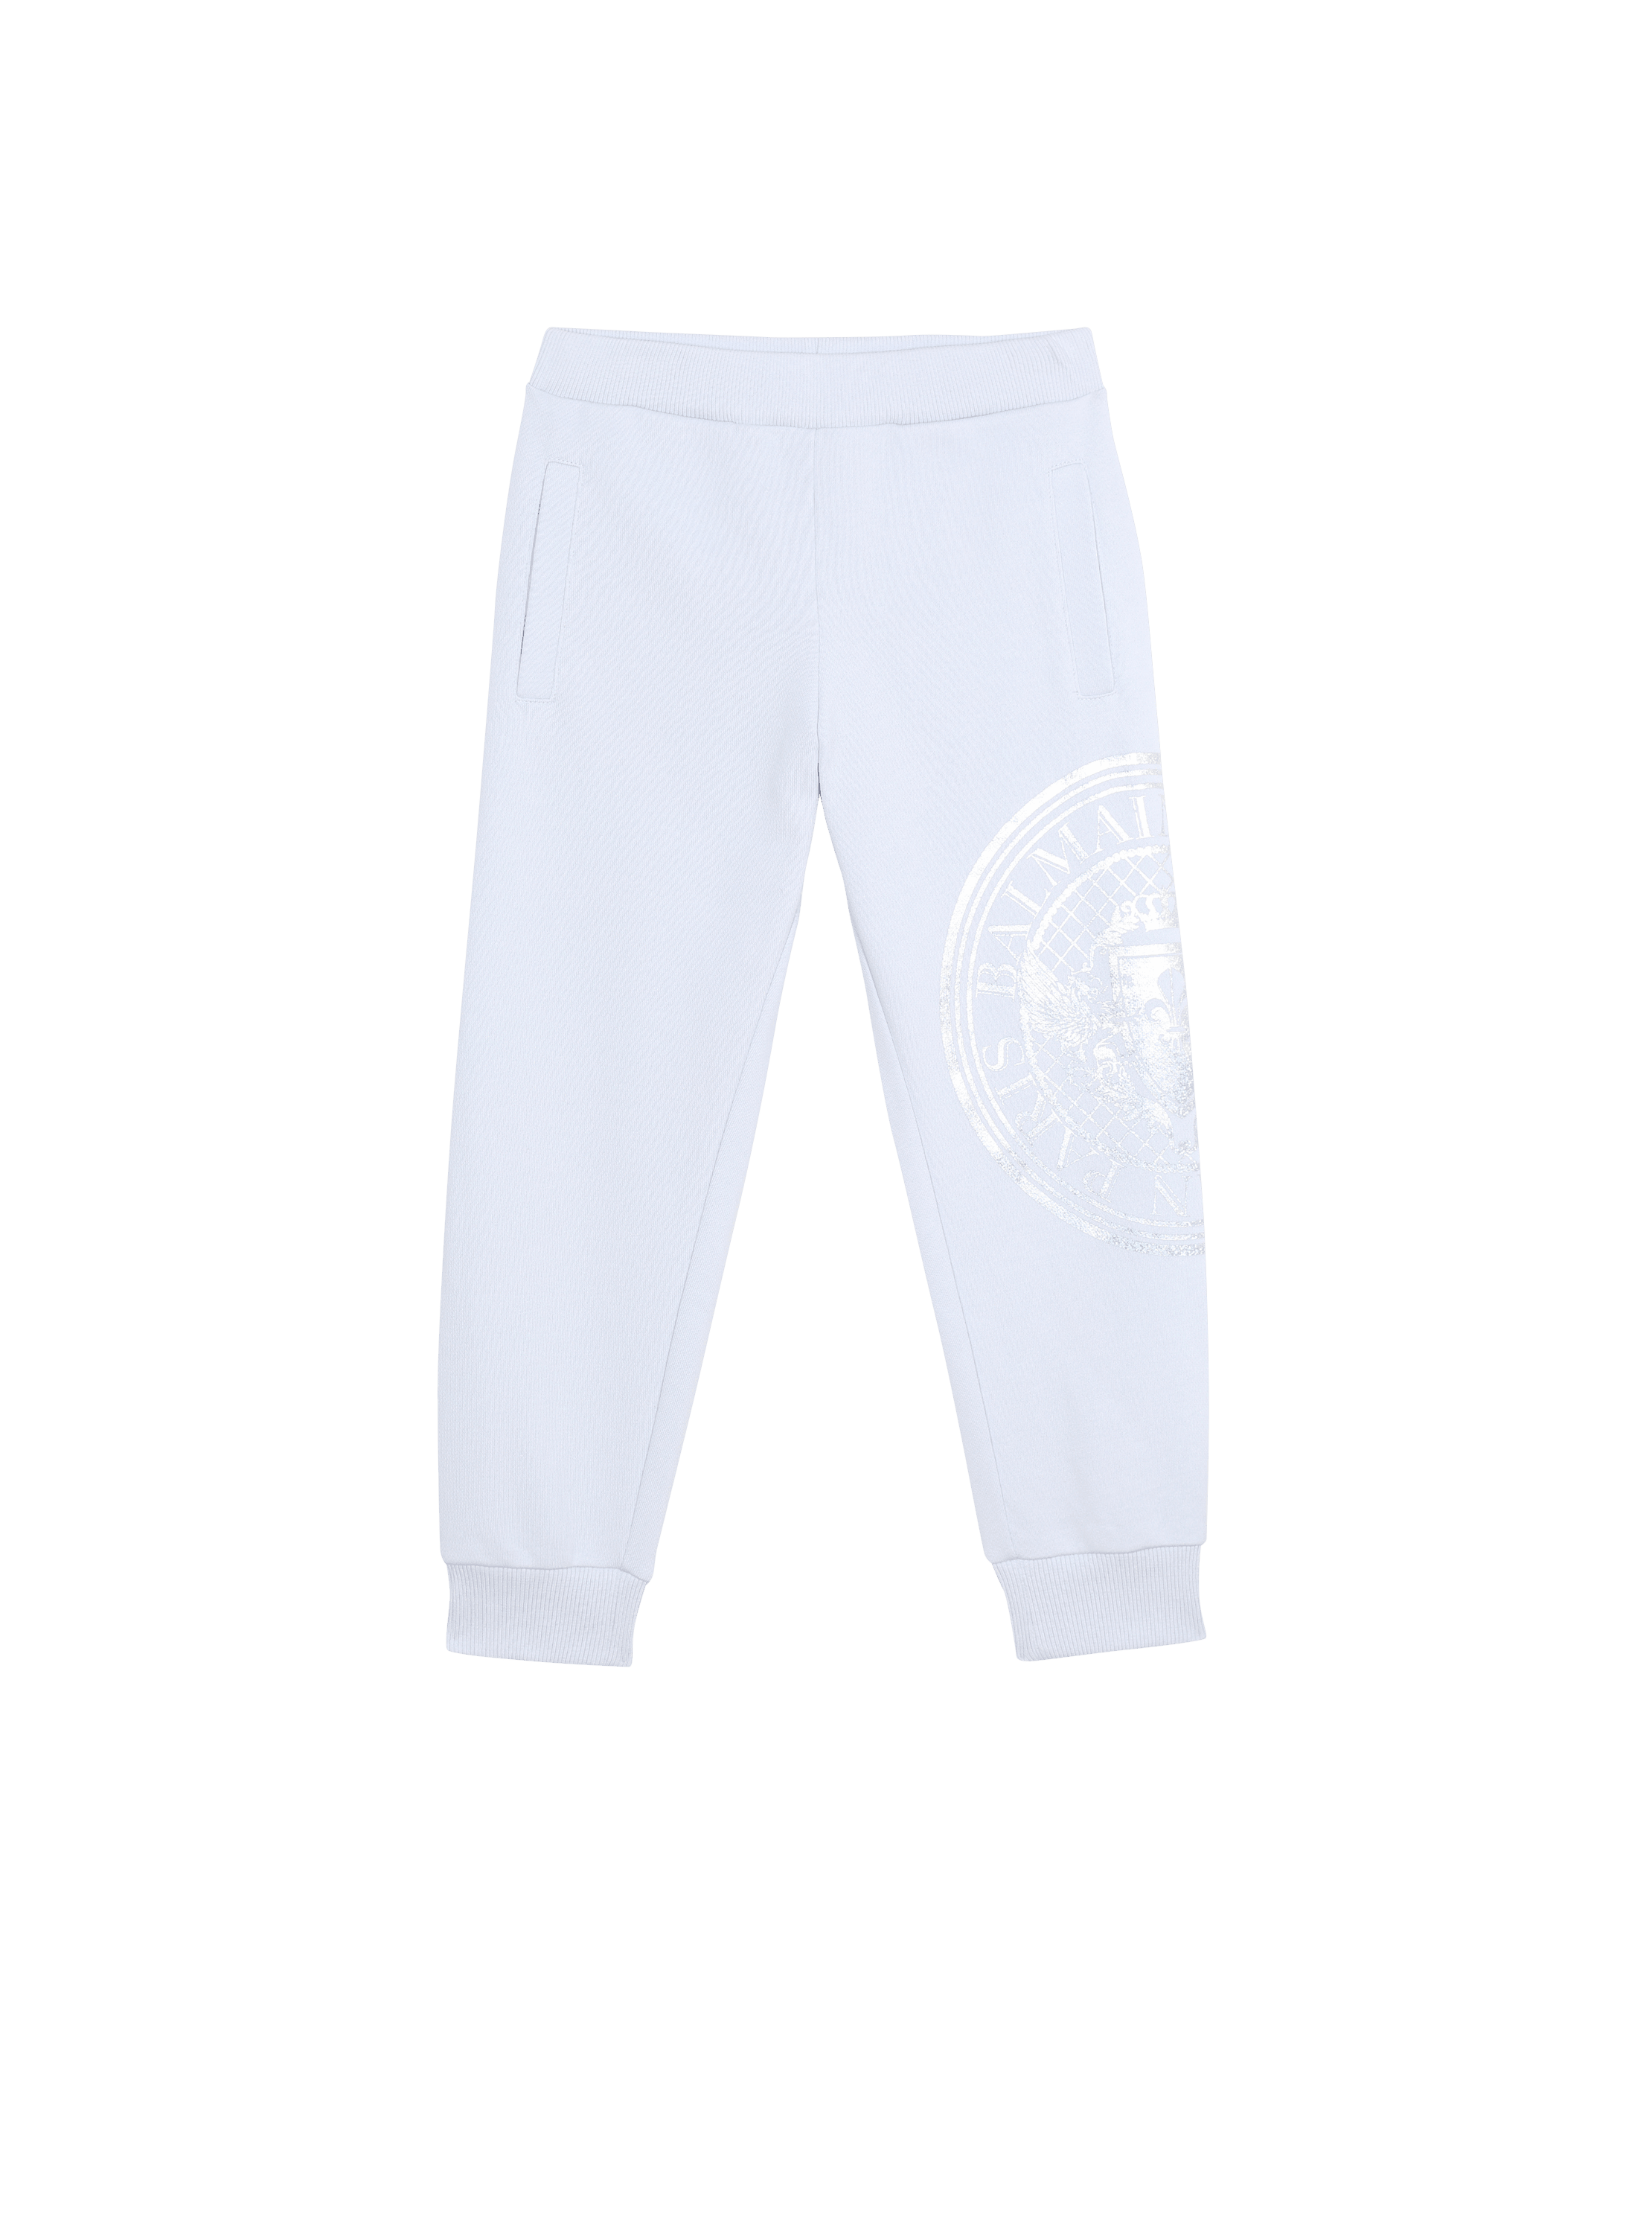 Cotton jogging bottoms with Balmain logo